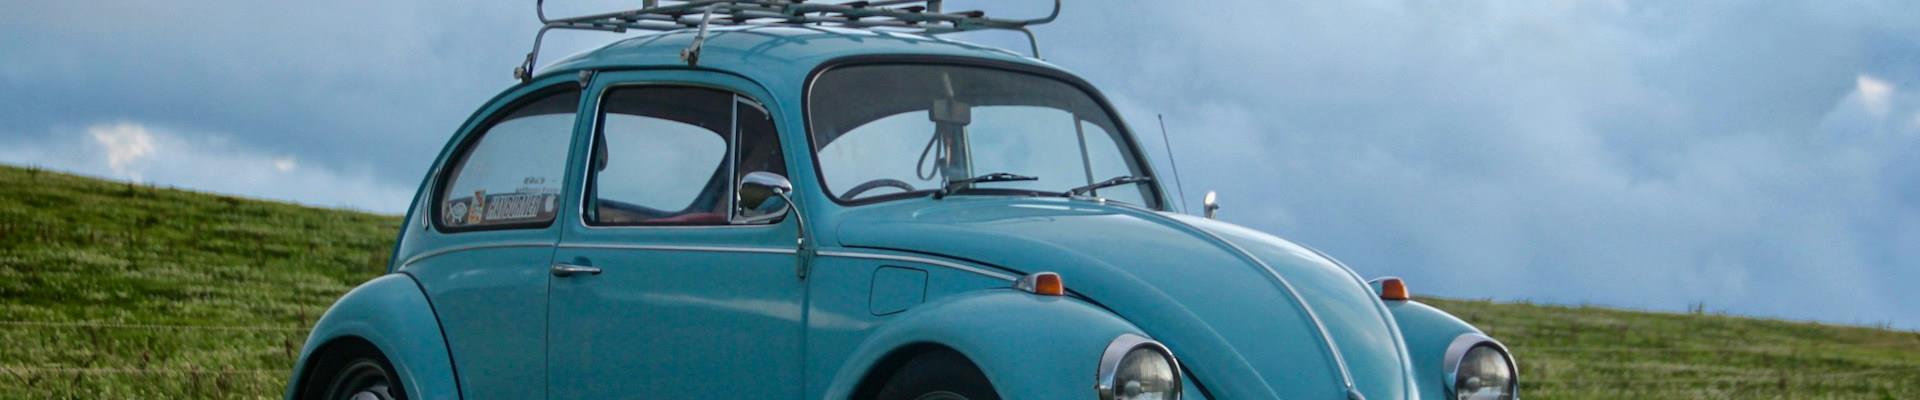 O anúncio completo da comemoração dos 75 anos da Volkswagen nos EUA